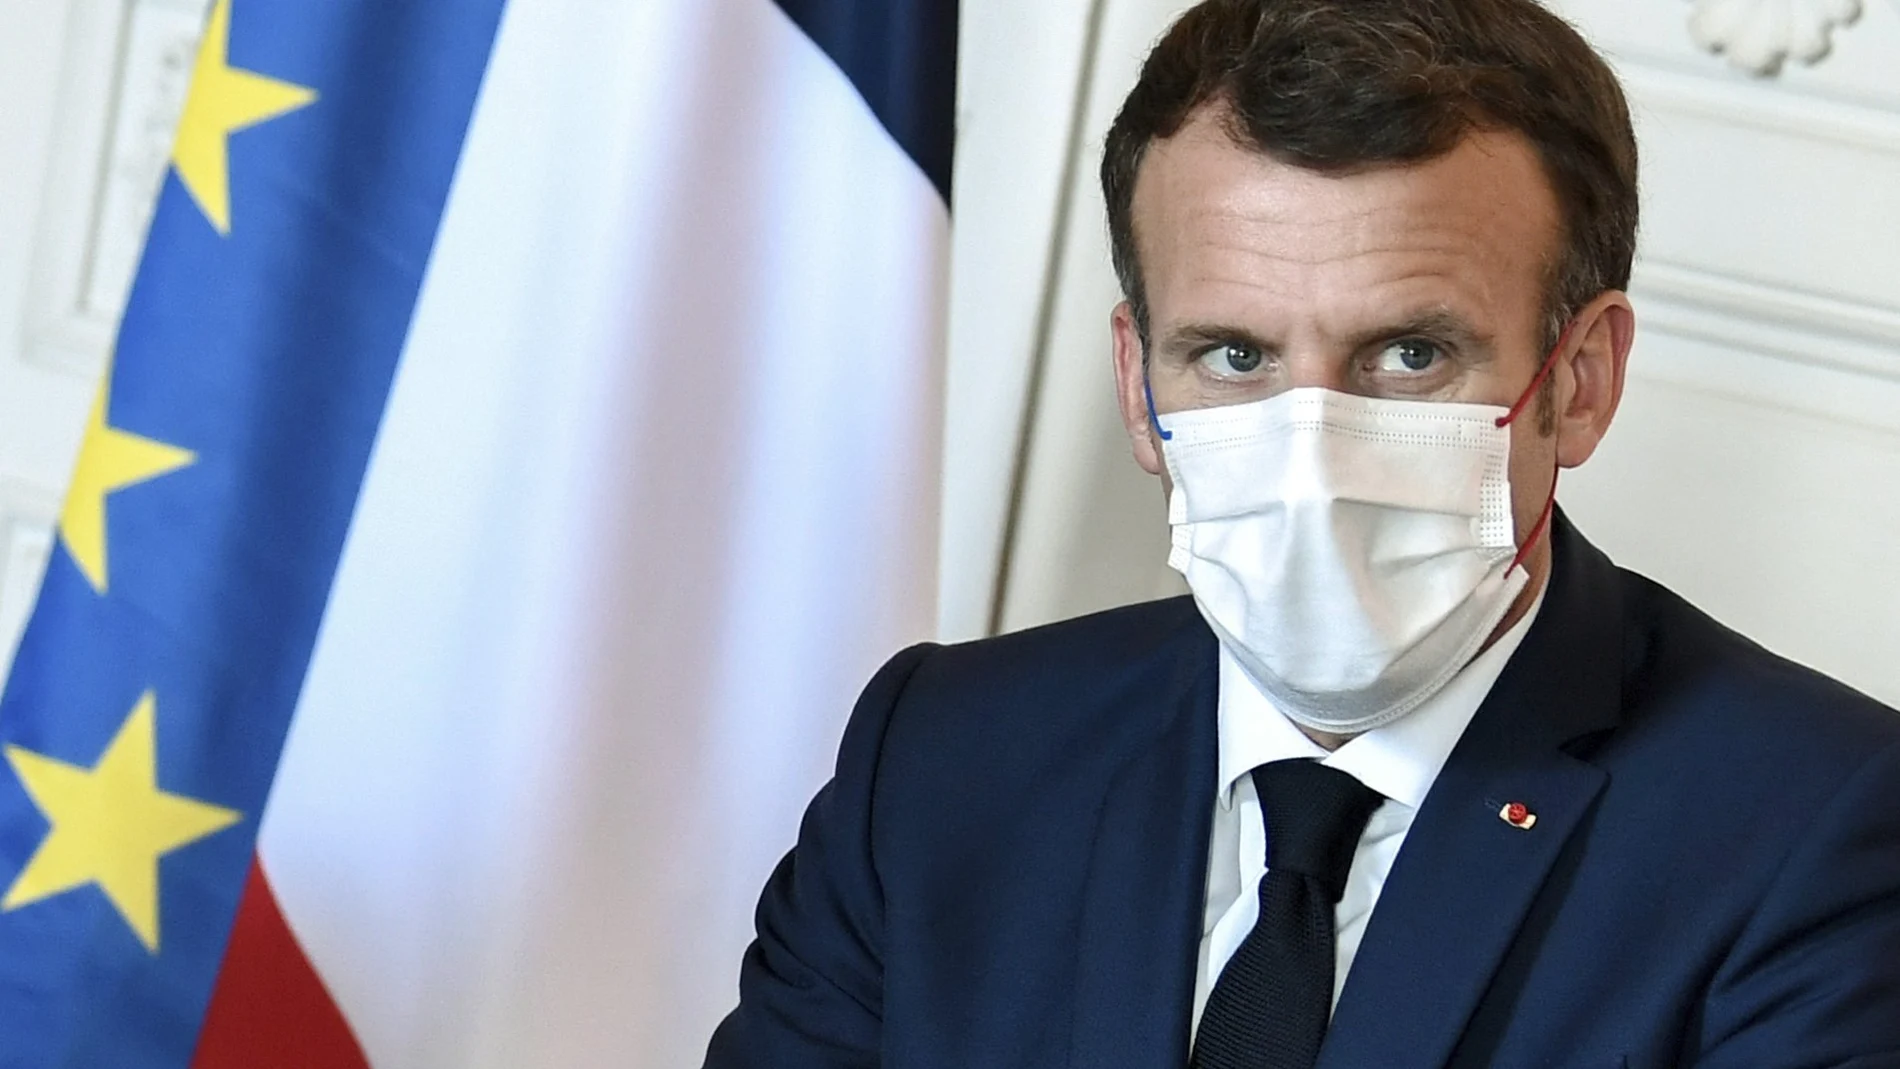 El partido de Macron sigue sin disponer de implantación regional en Francia